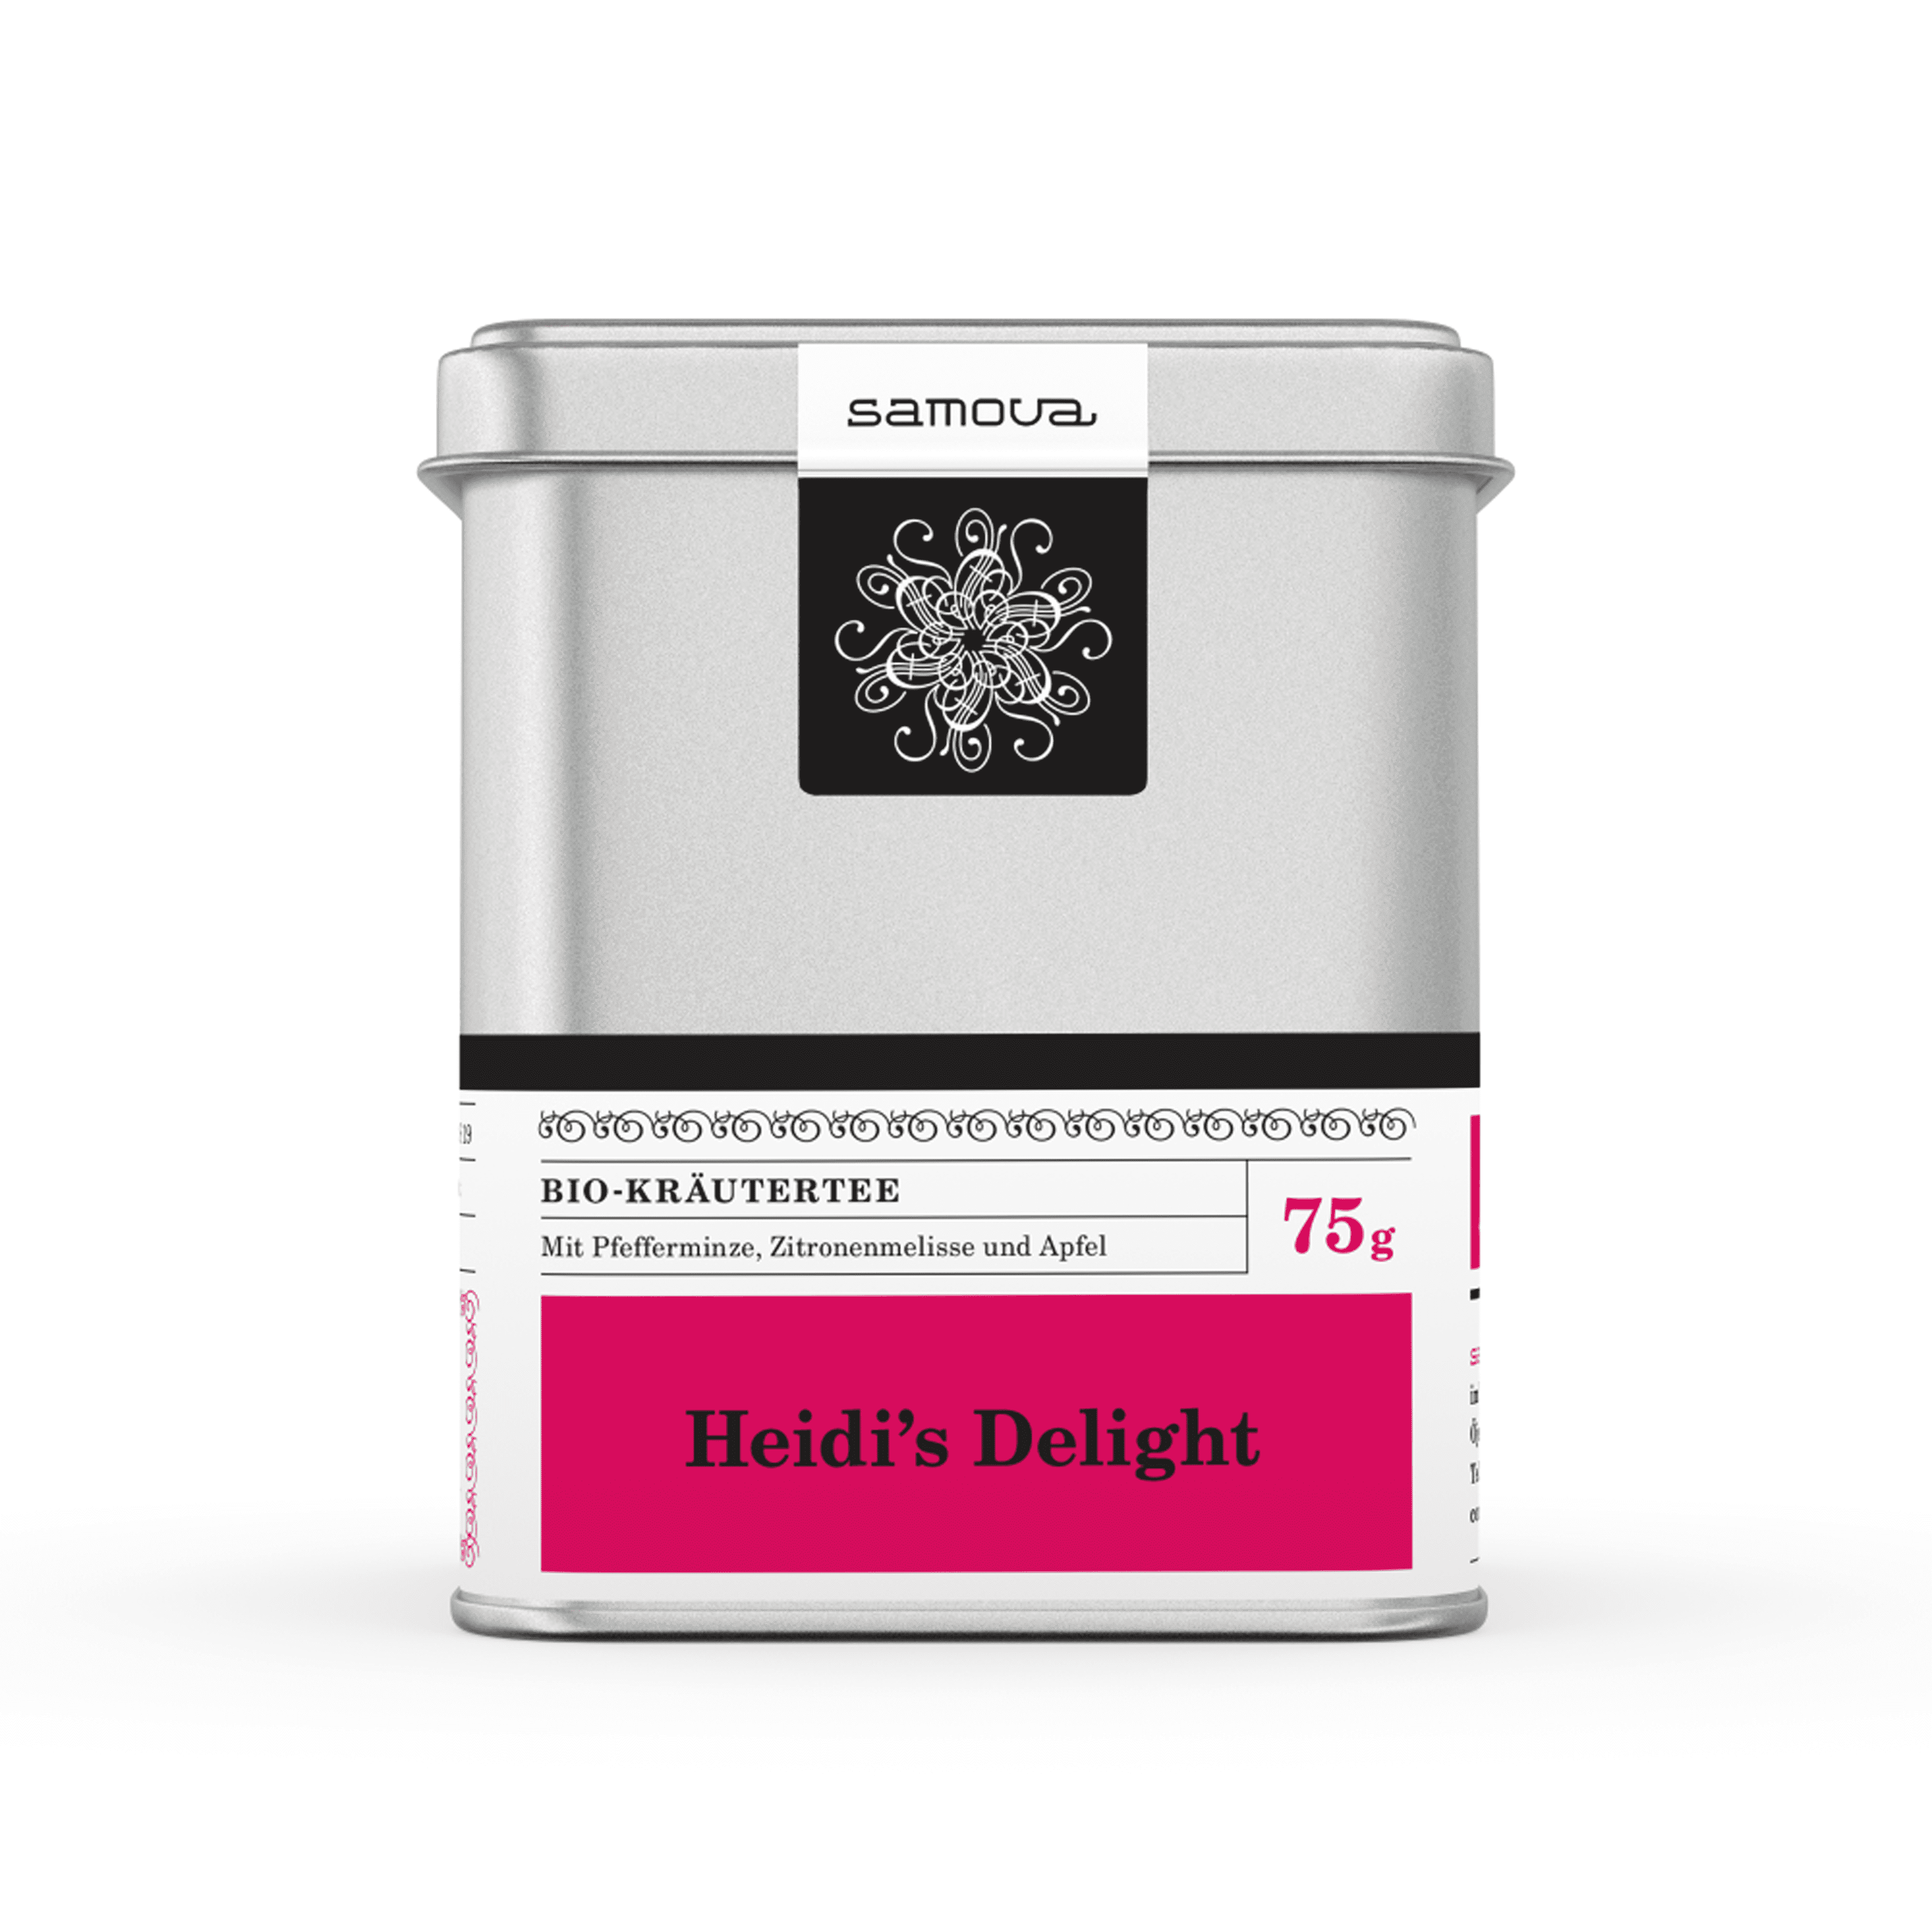 Dåse af Heidi's Delight te